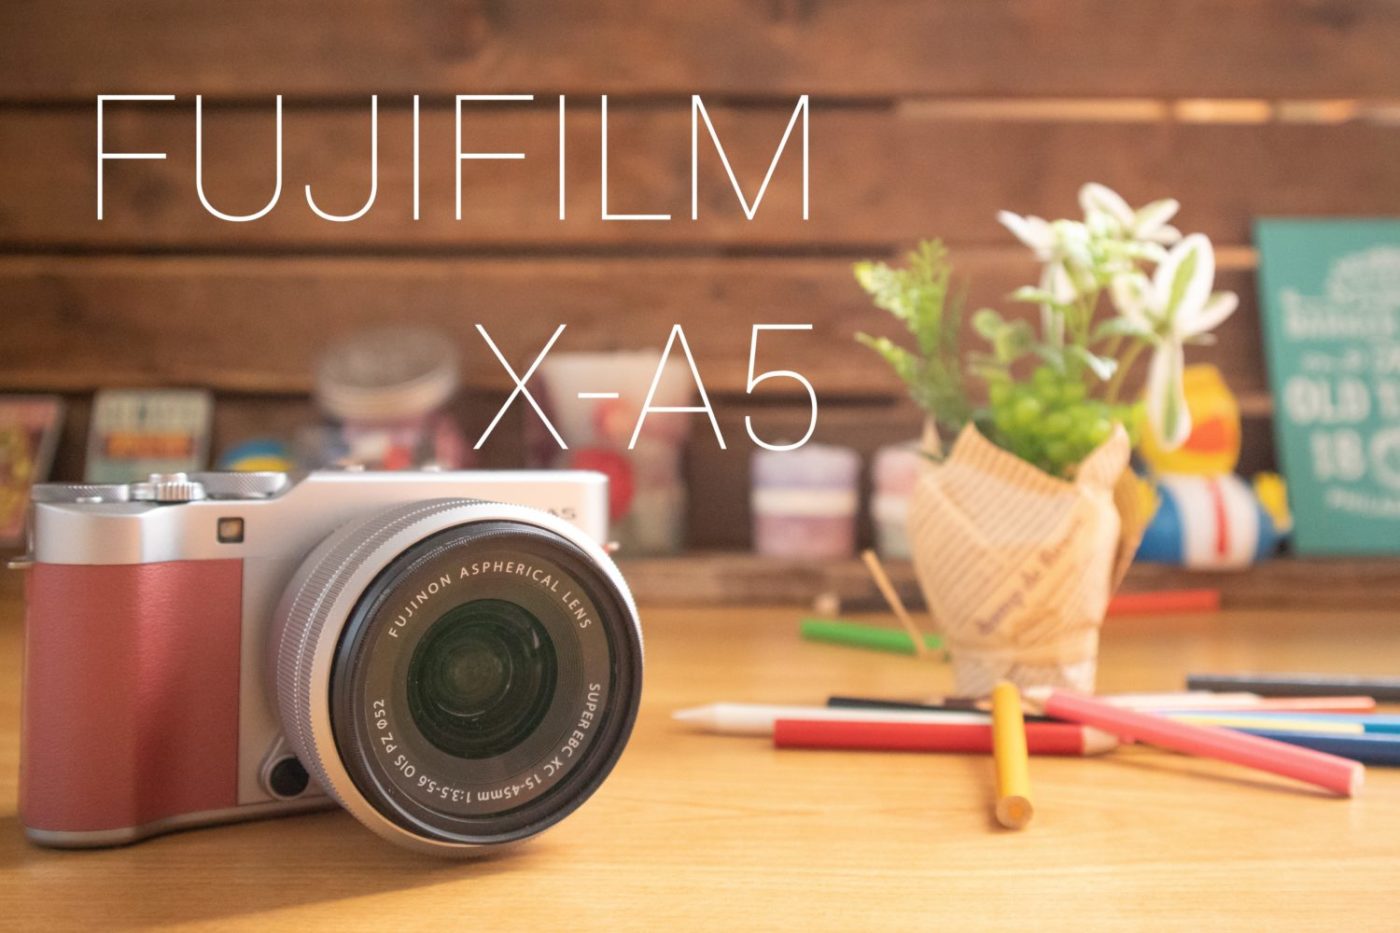 FUJIFILM ミラーレス一眼カメラ X-A5レンズキット シルバー-